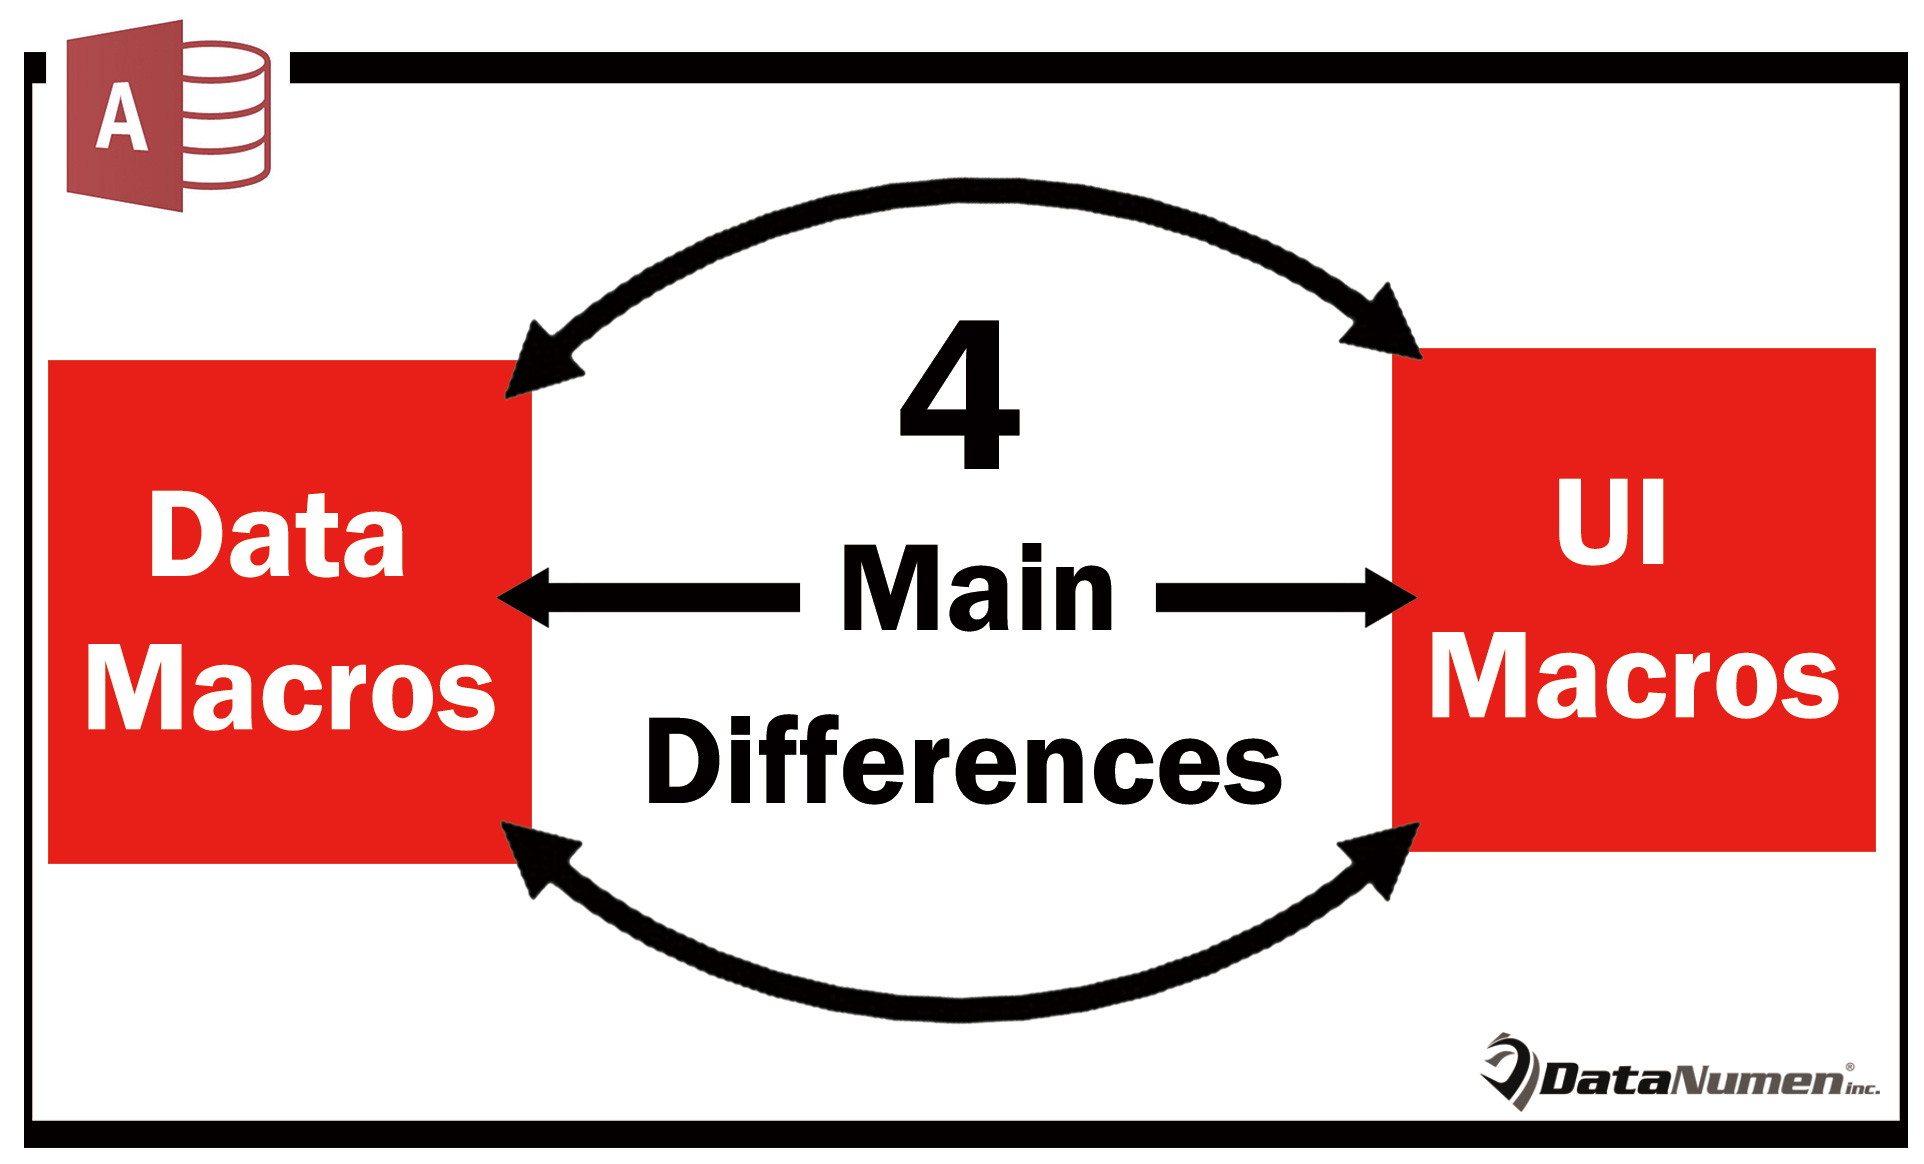 4 Main Differences Between Data Macros And UI Macros